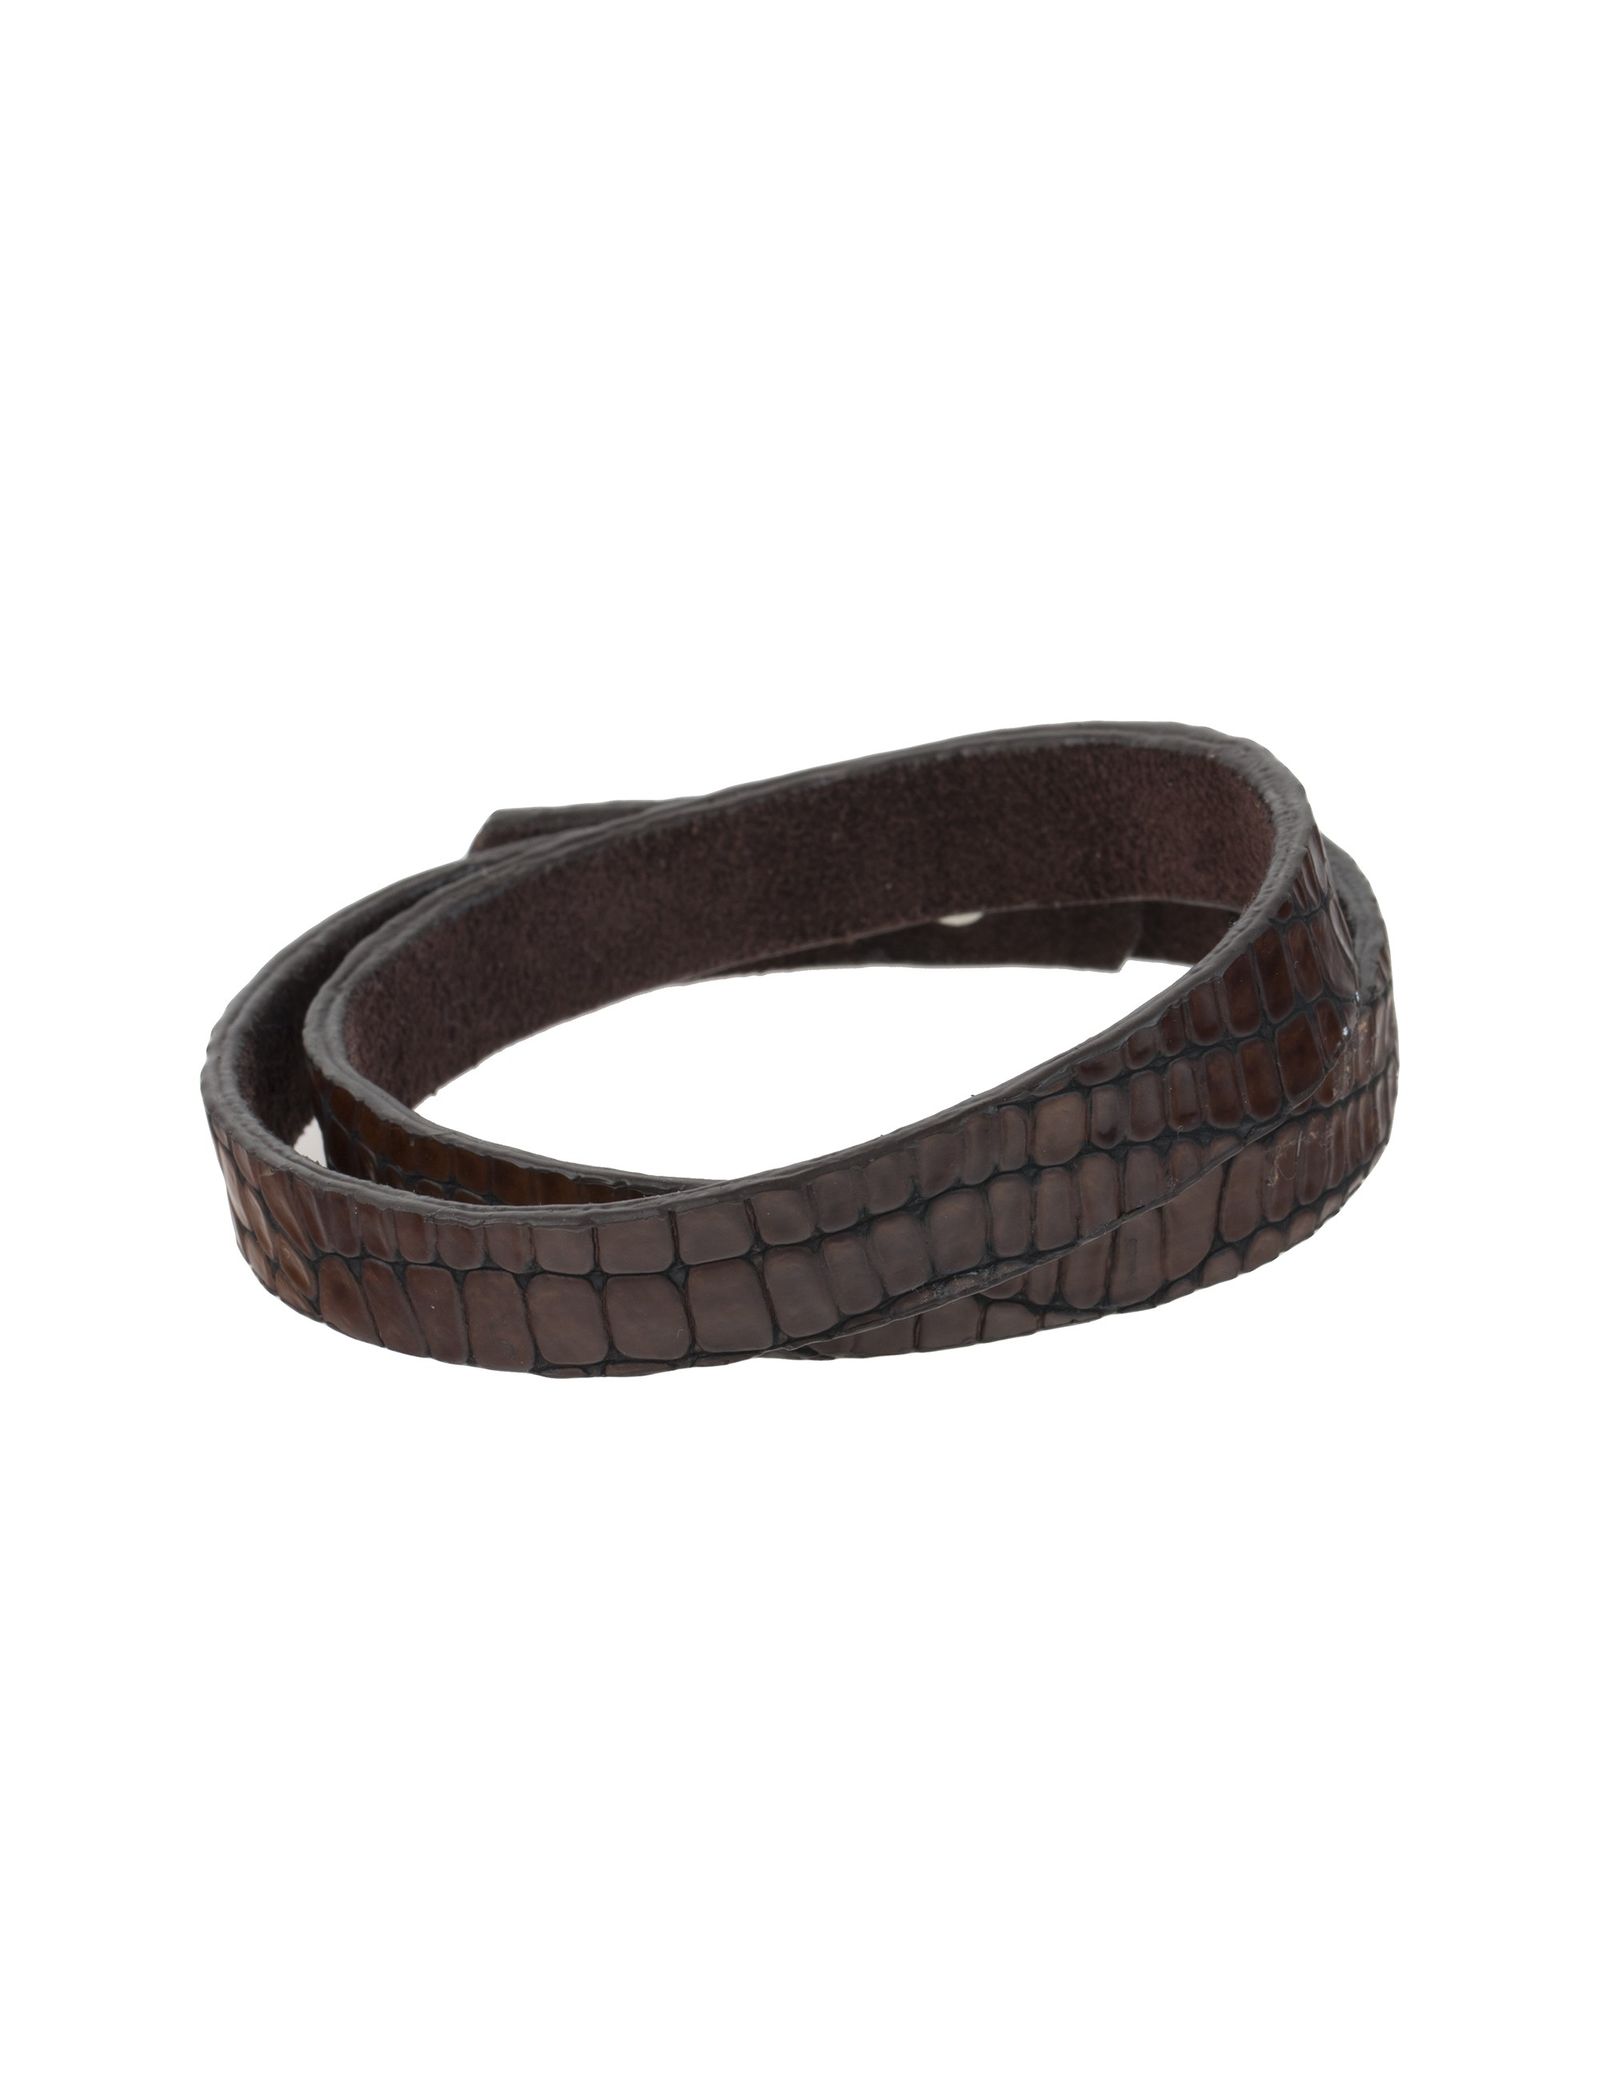 دستبند چرم مردانه - ماکو دیزاین سایز 43 cm - قهوه اي - 1